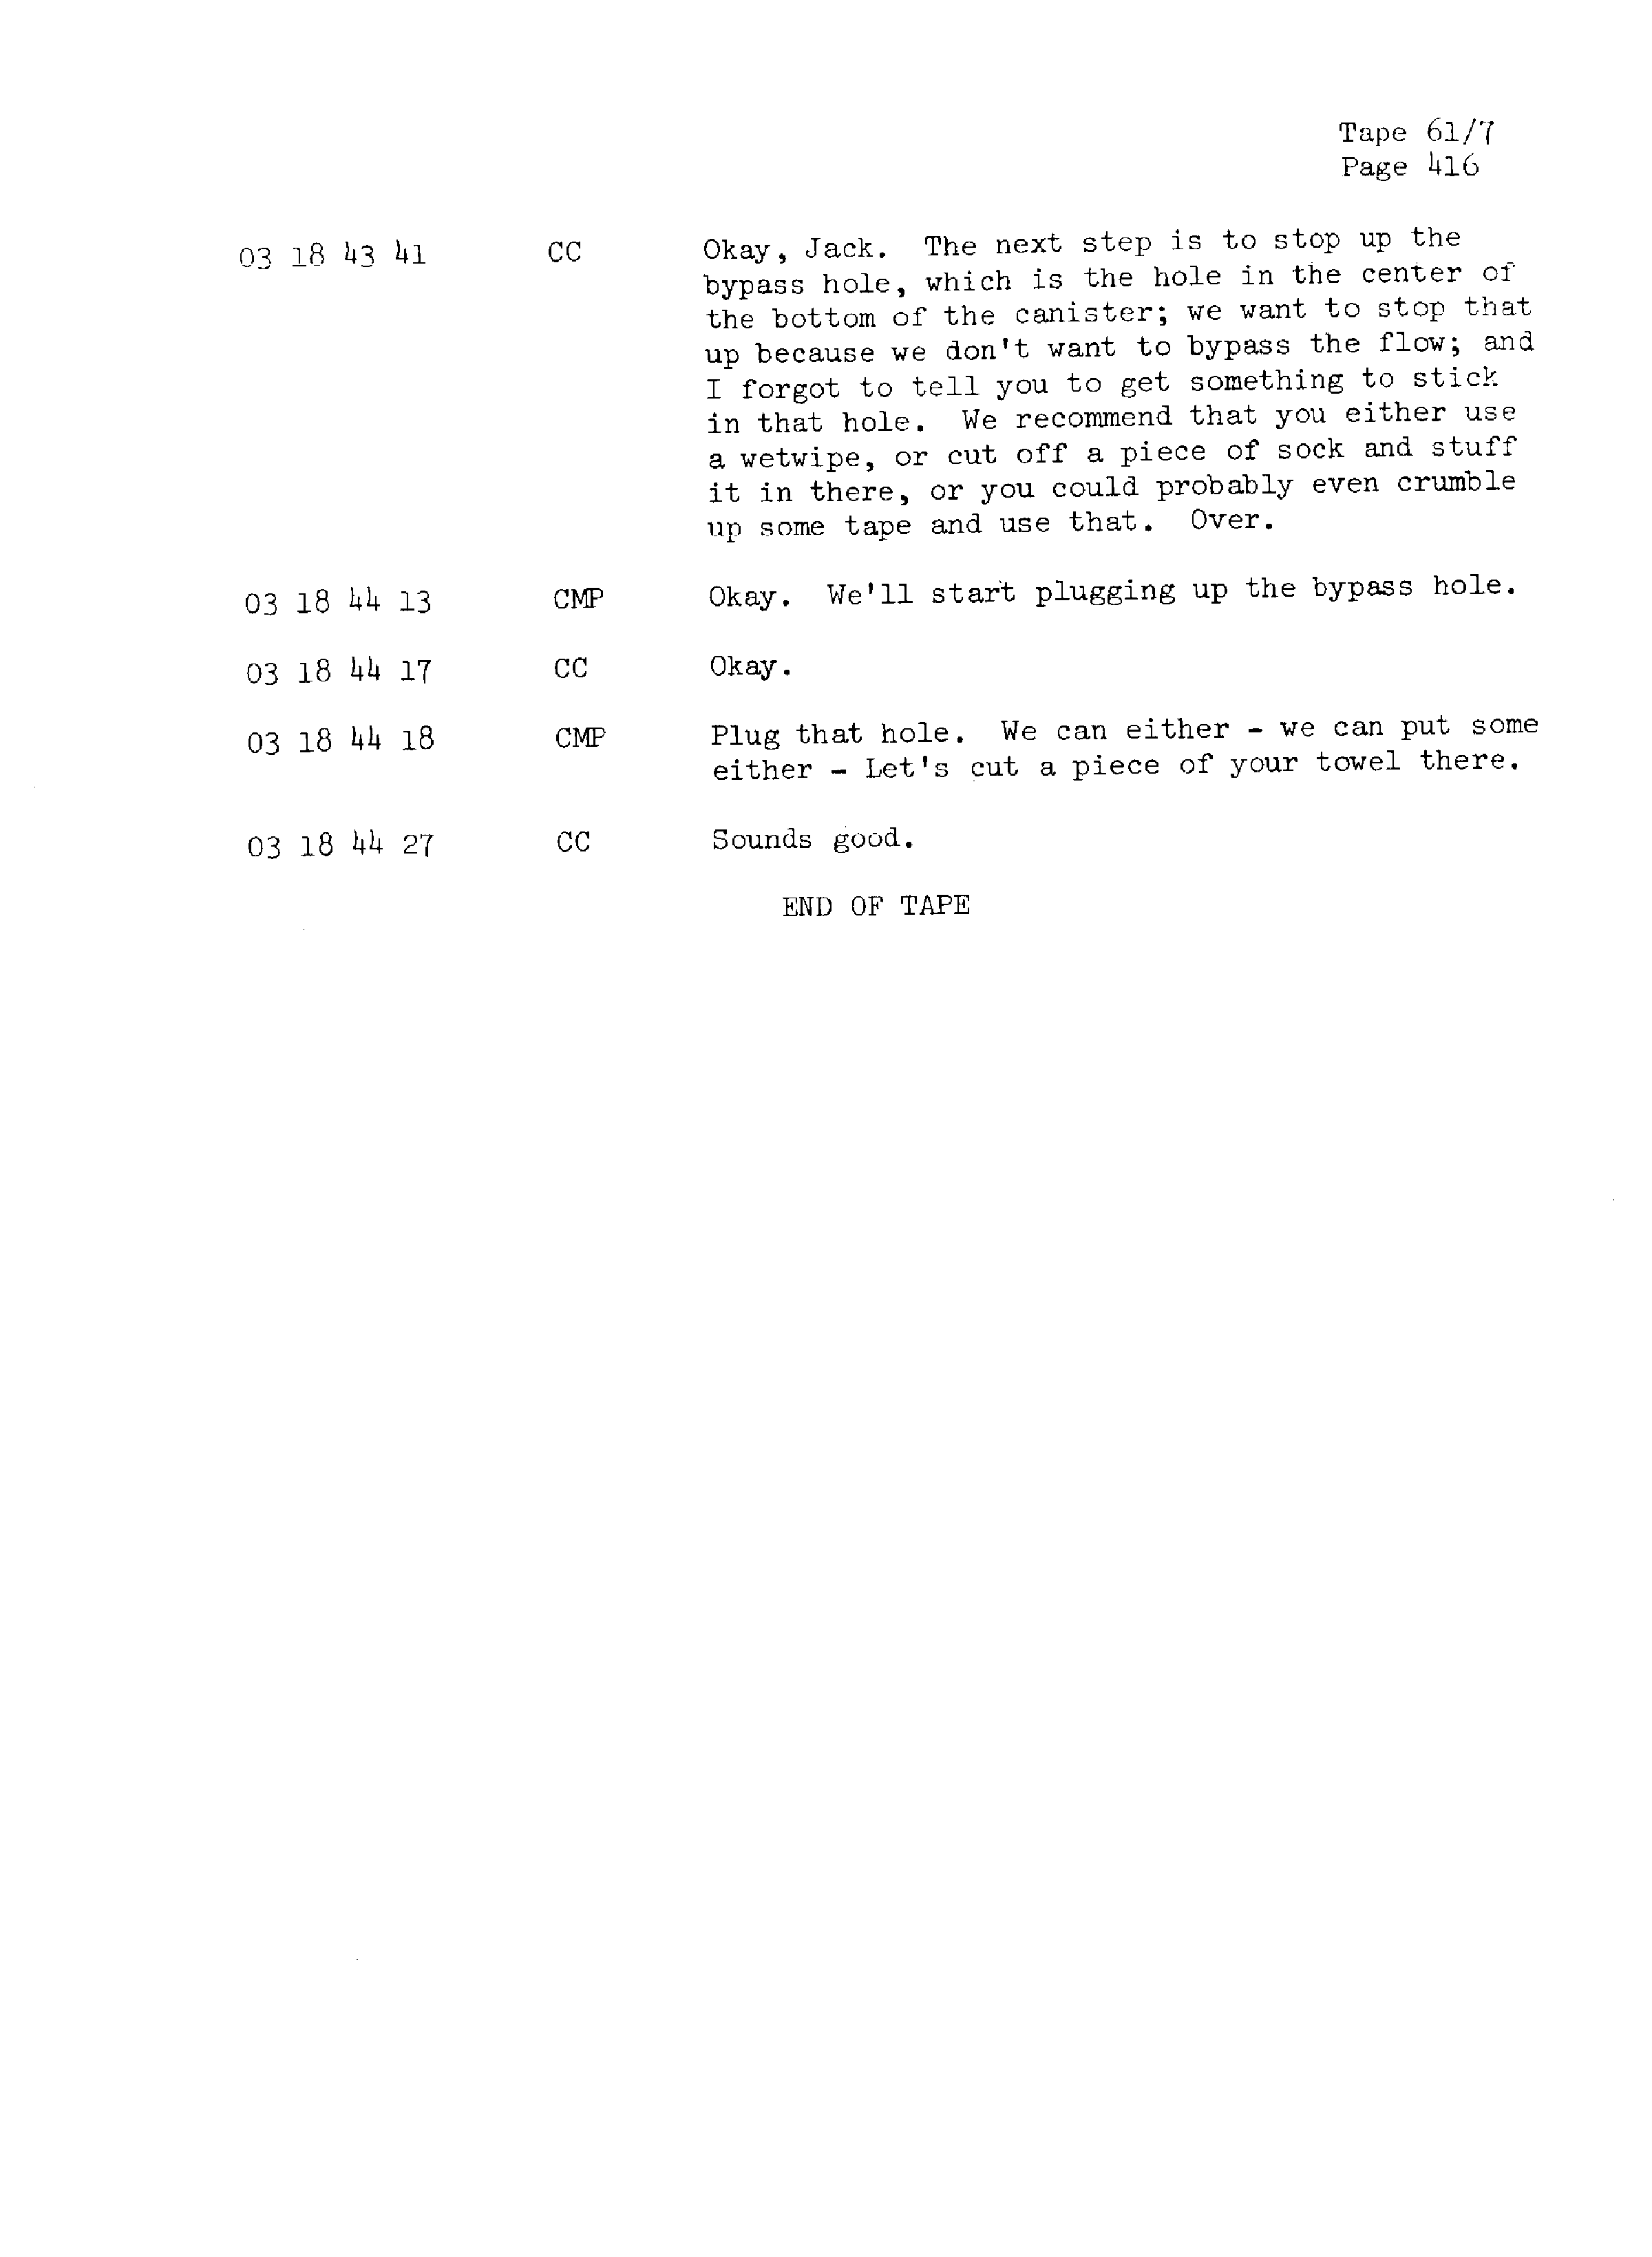 Page 423 of Apollo 13’s original transcript